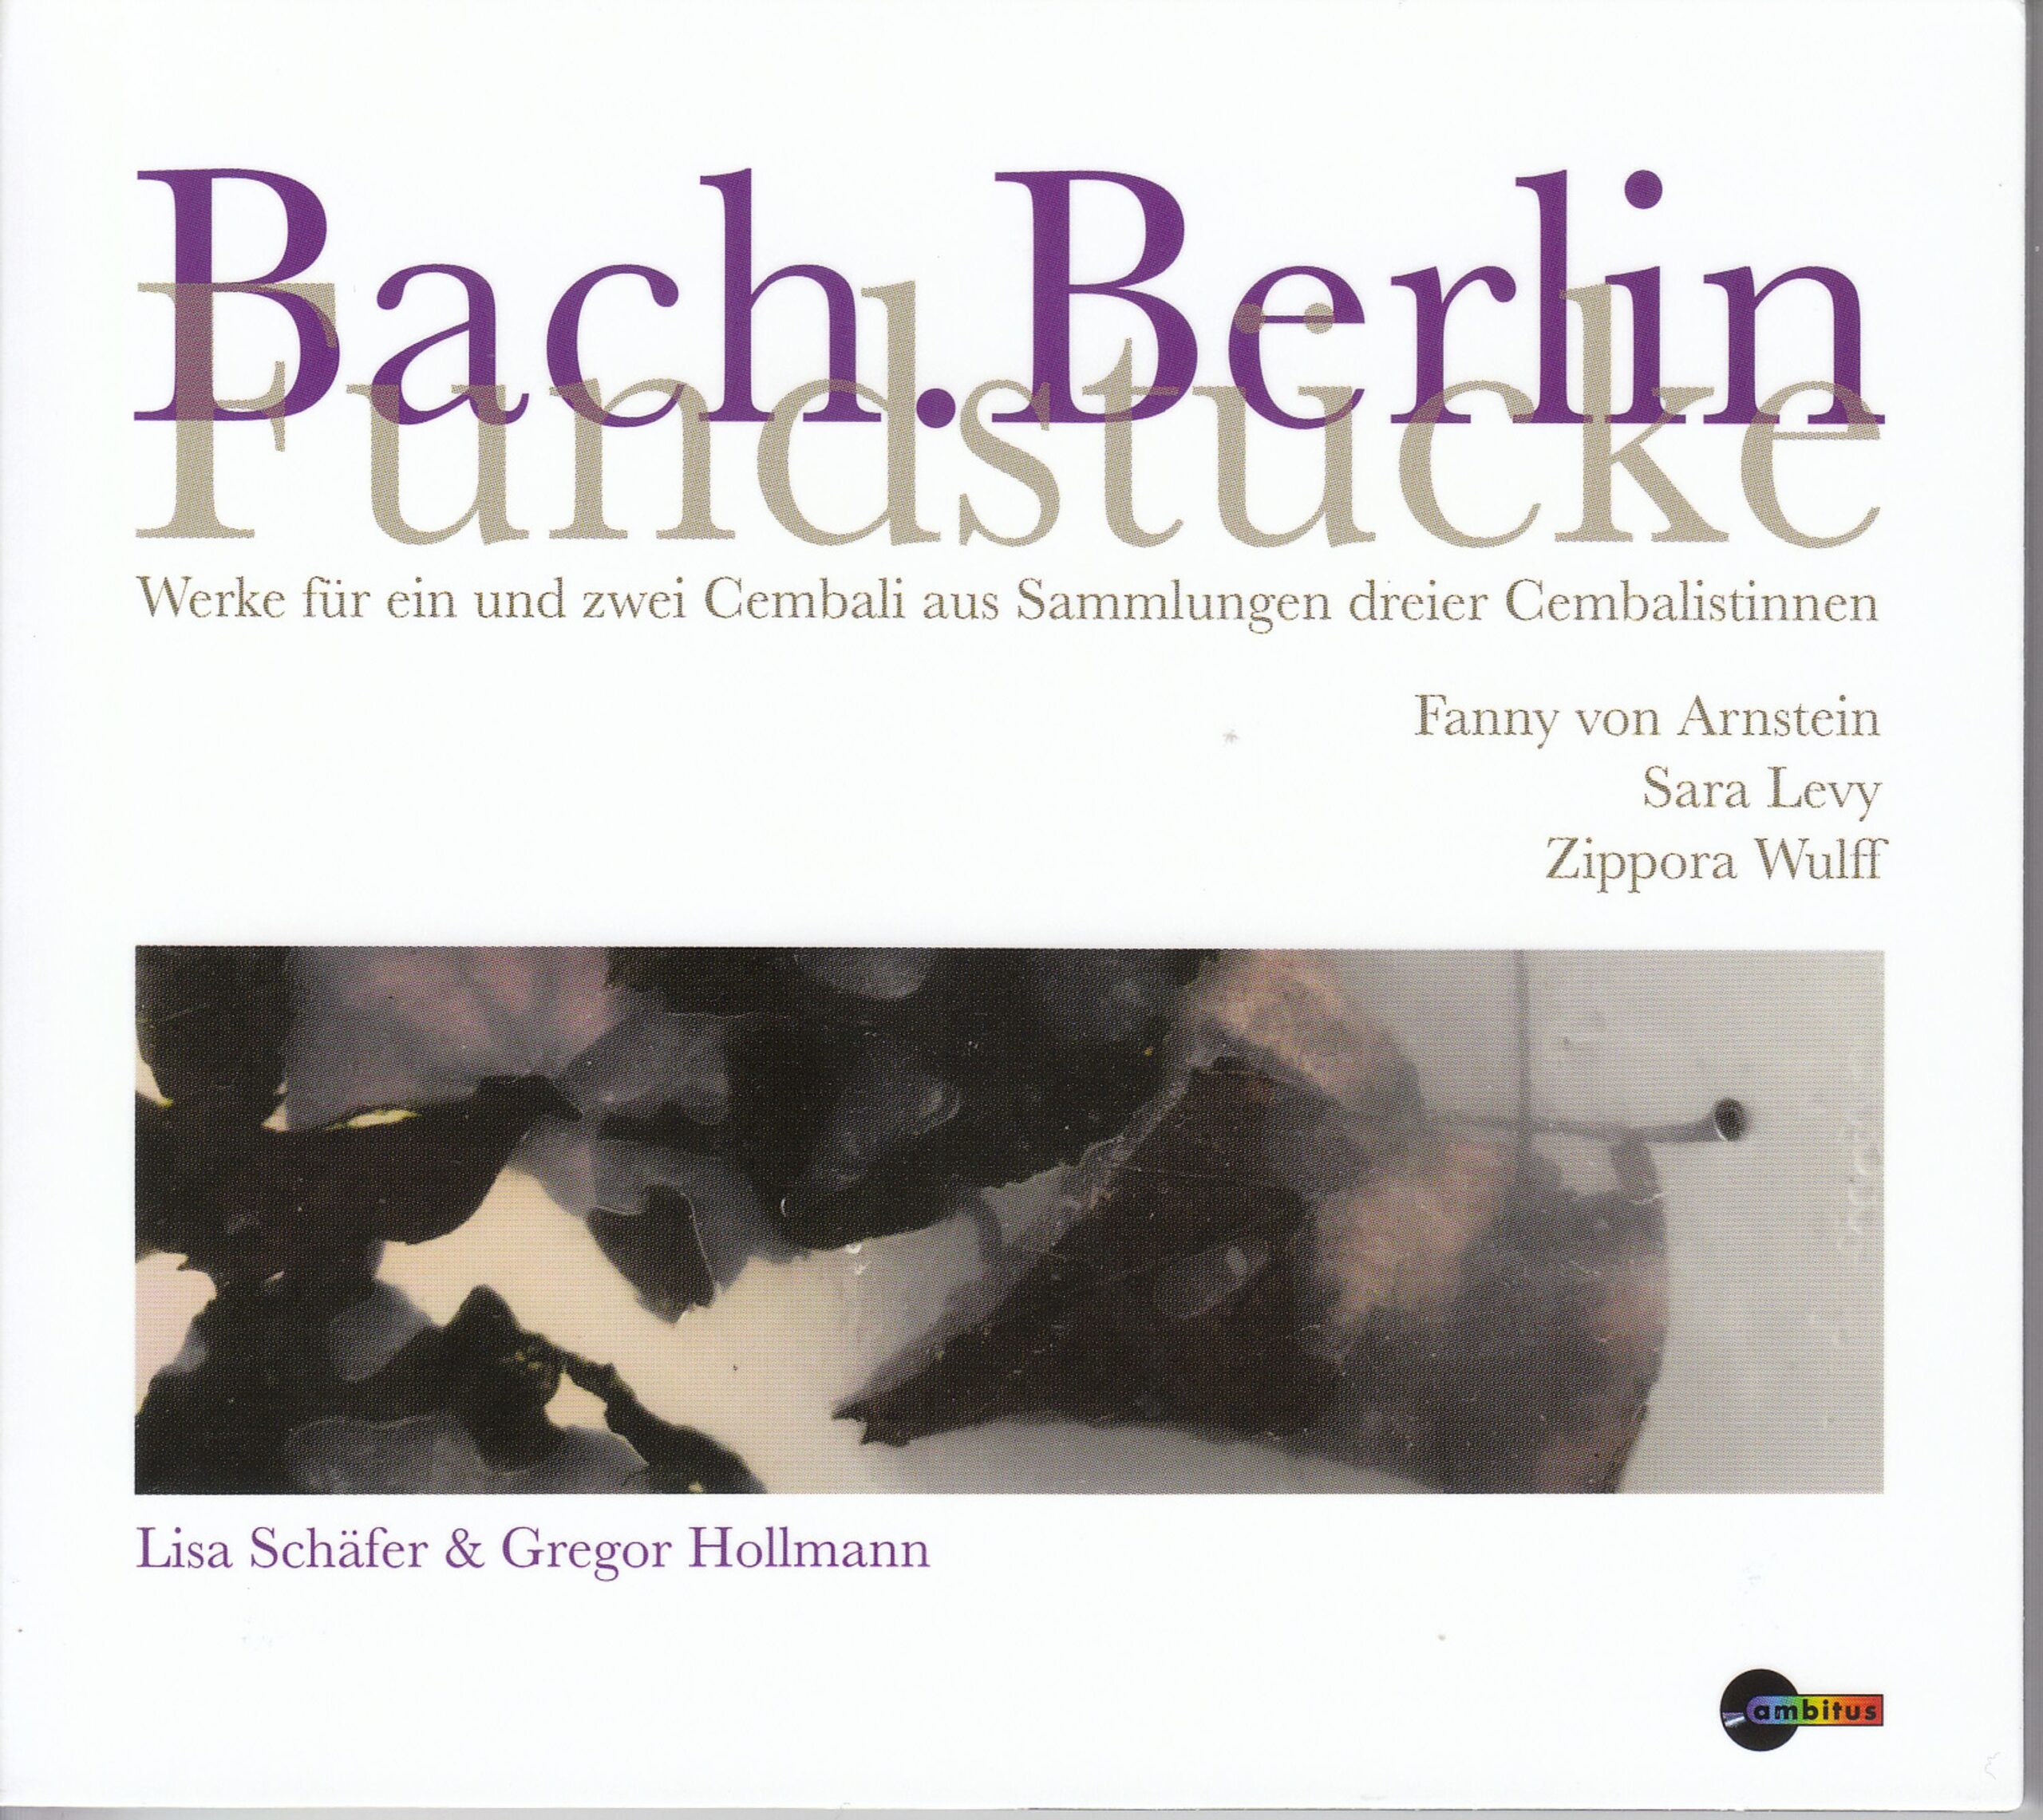 Bach.Berlin Fundstücke / Schäfer & Hollmann